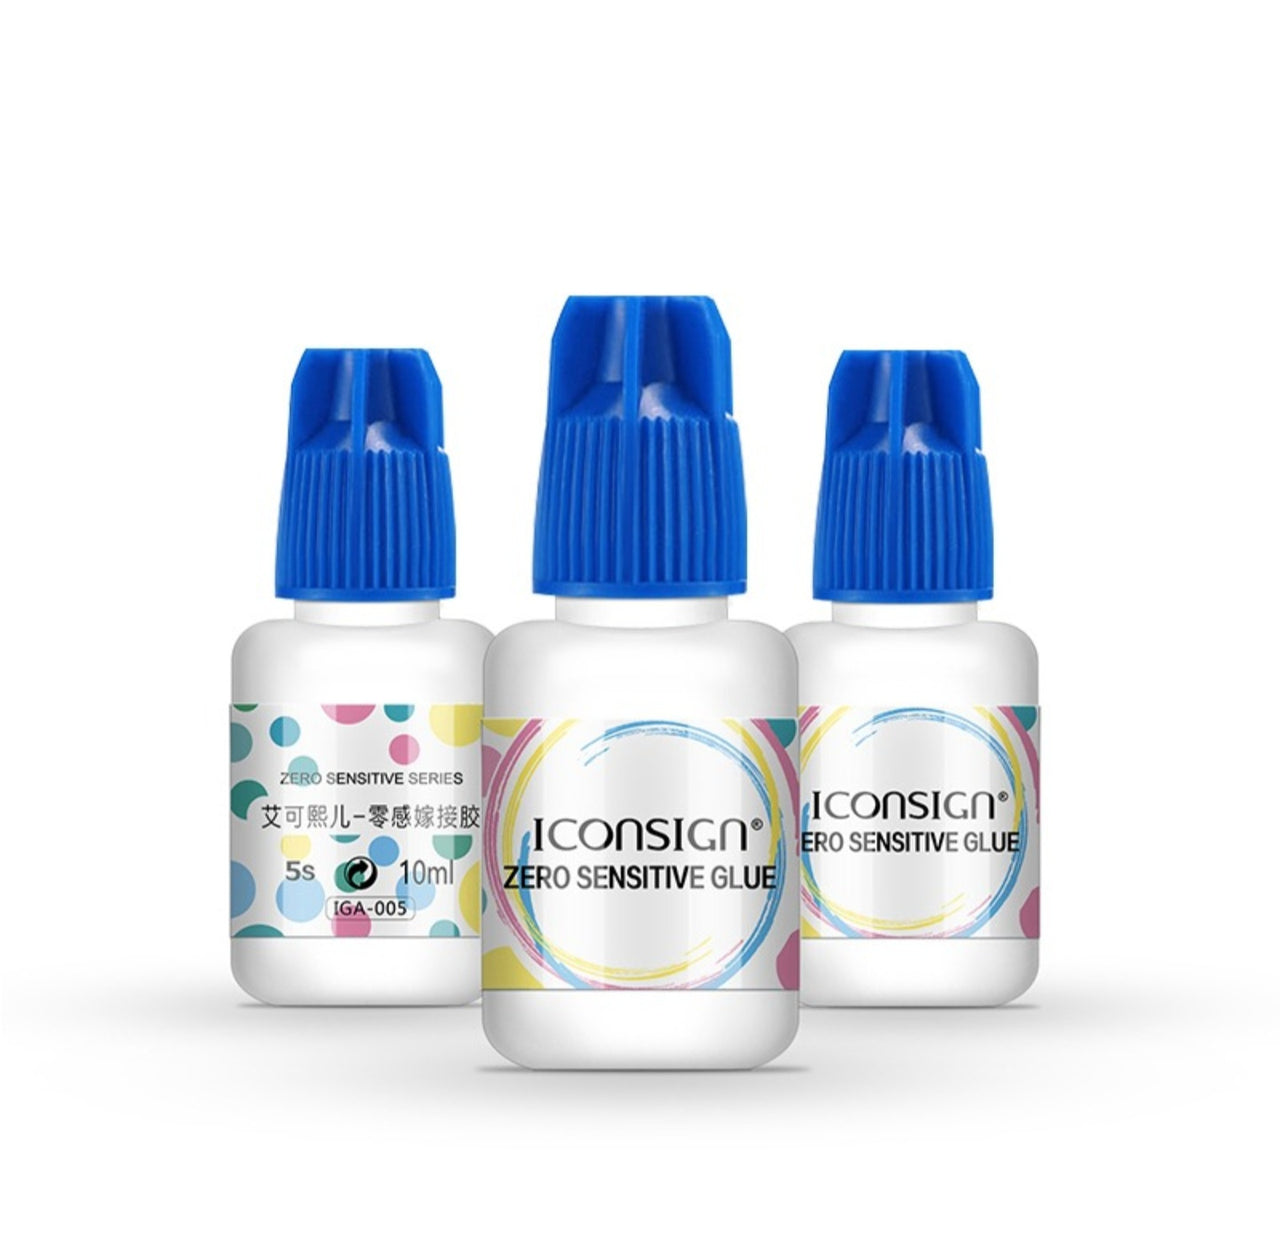 Iconsign Zero Sensitive Premium Lash Glue